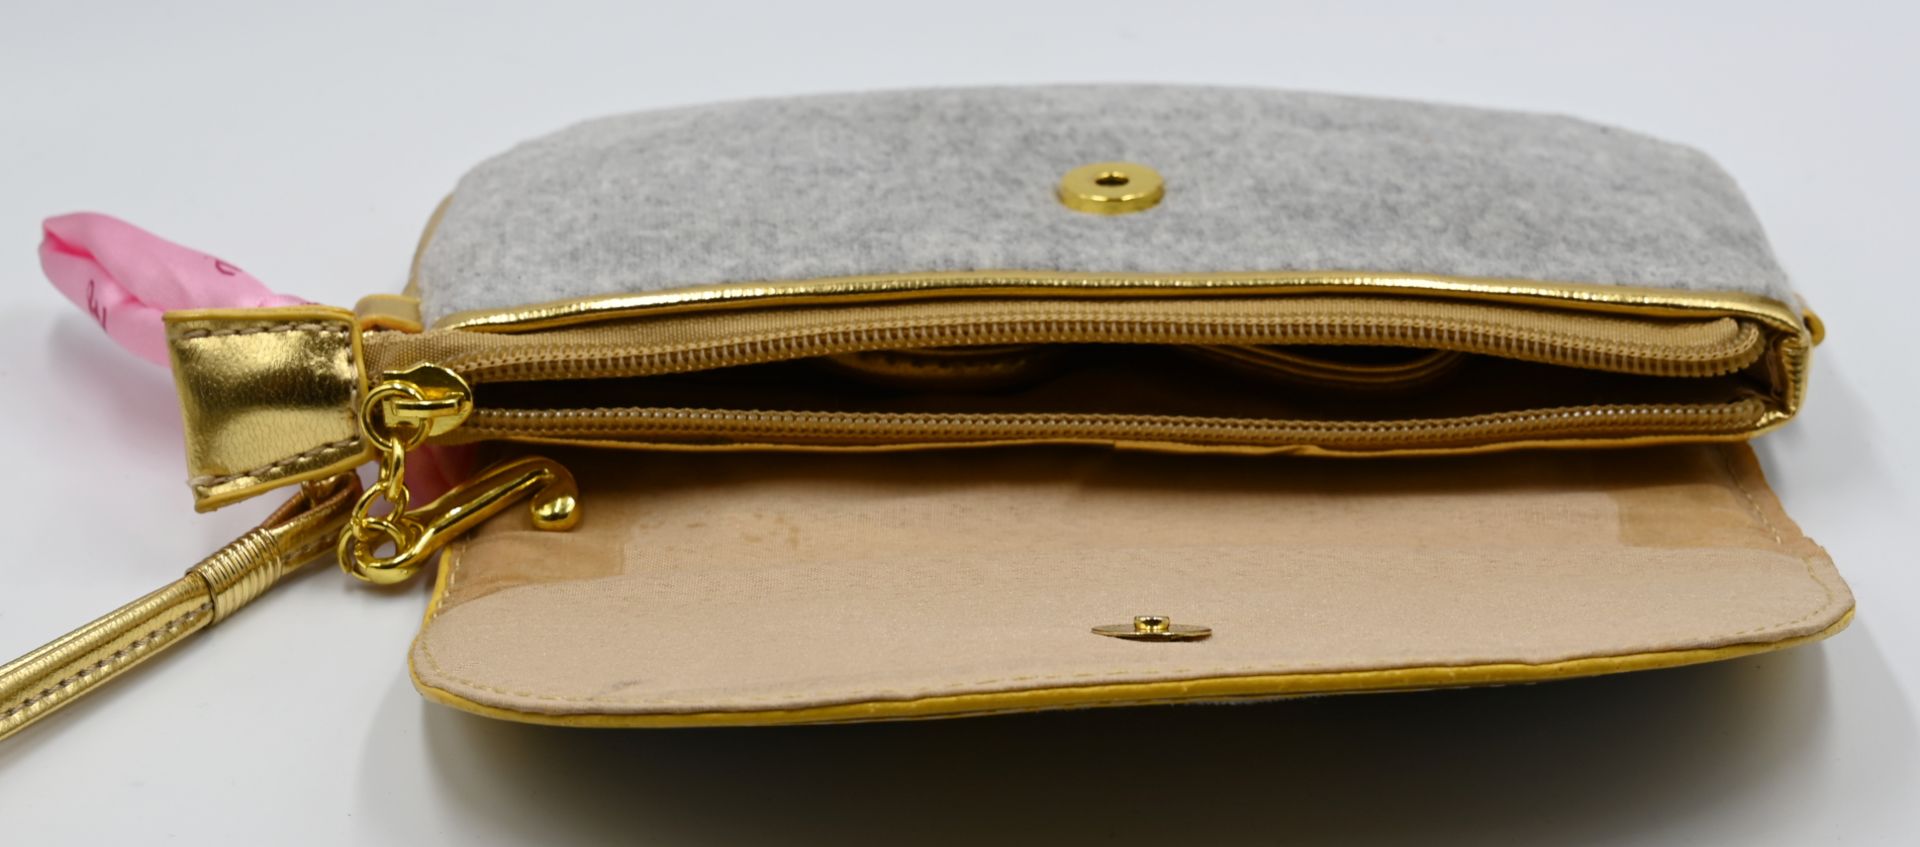 1 Mäppchen/Umhängetasche, Textil JUICY Luxury, grau/gold, 11,5cm x 19,5cm, min. Tsp. - Image 3 of 3